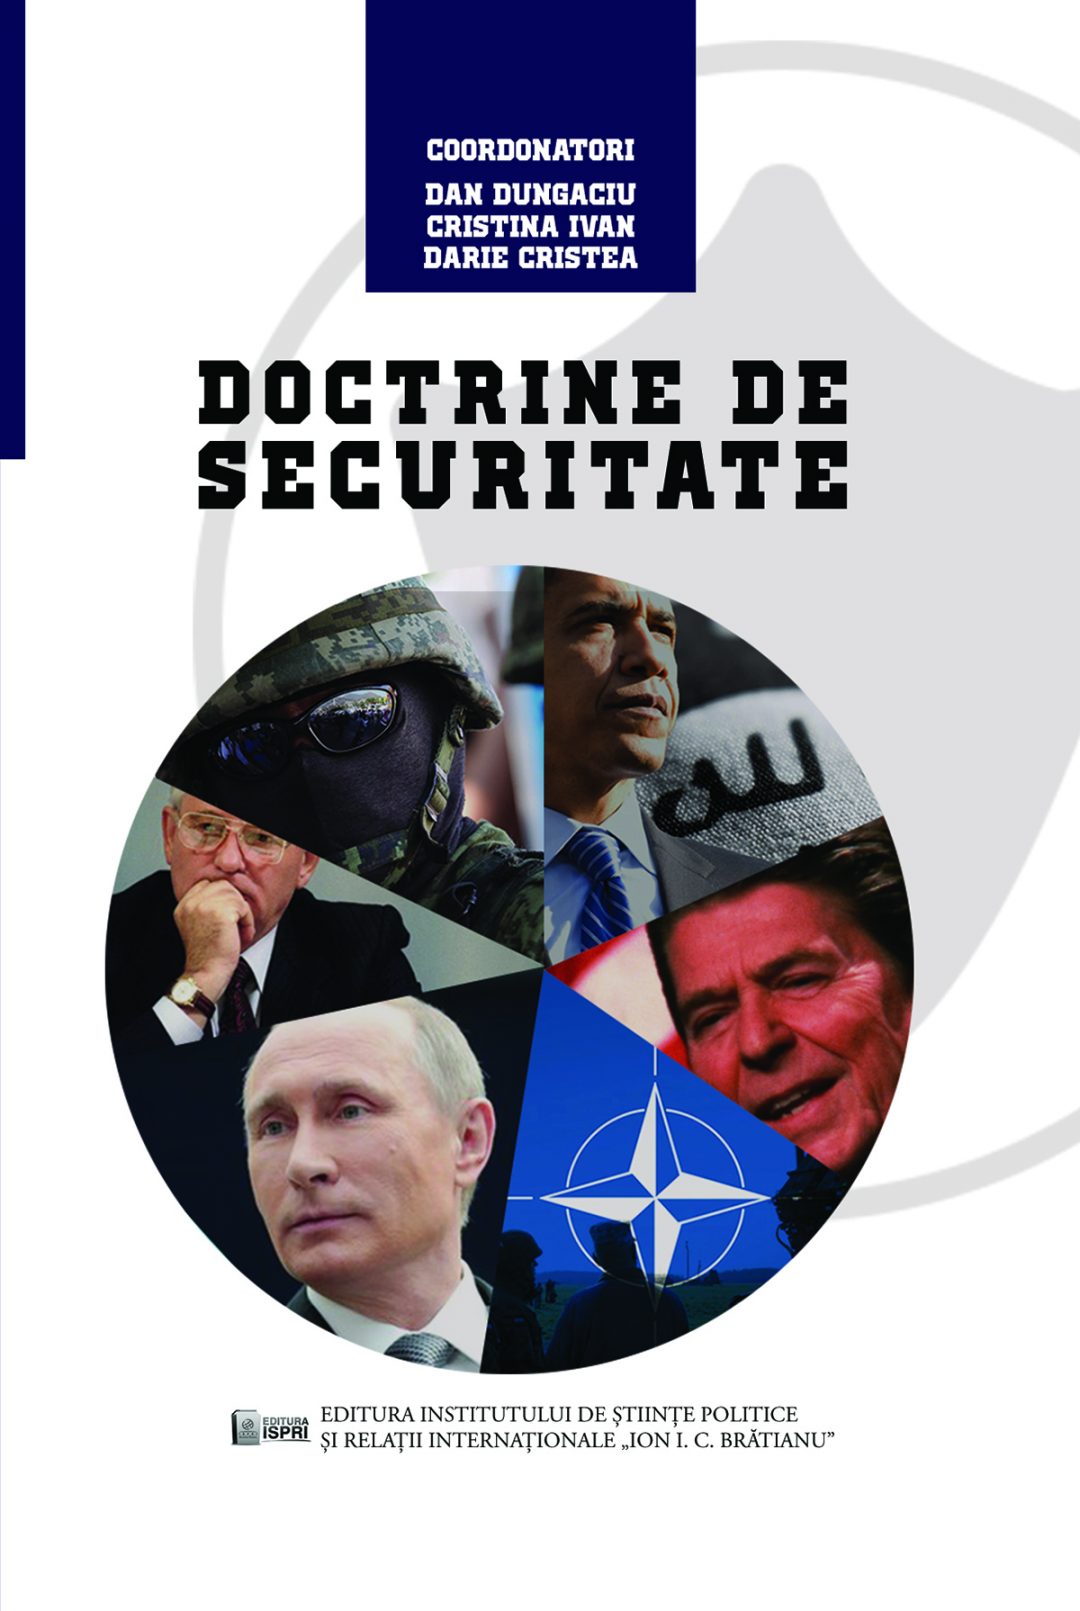 Dan Dungaciu, Cristina Ivan, Darie Cristea (coord.) Doctrine de securitate